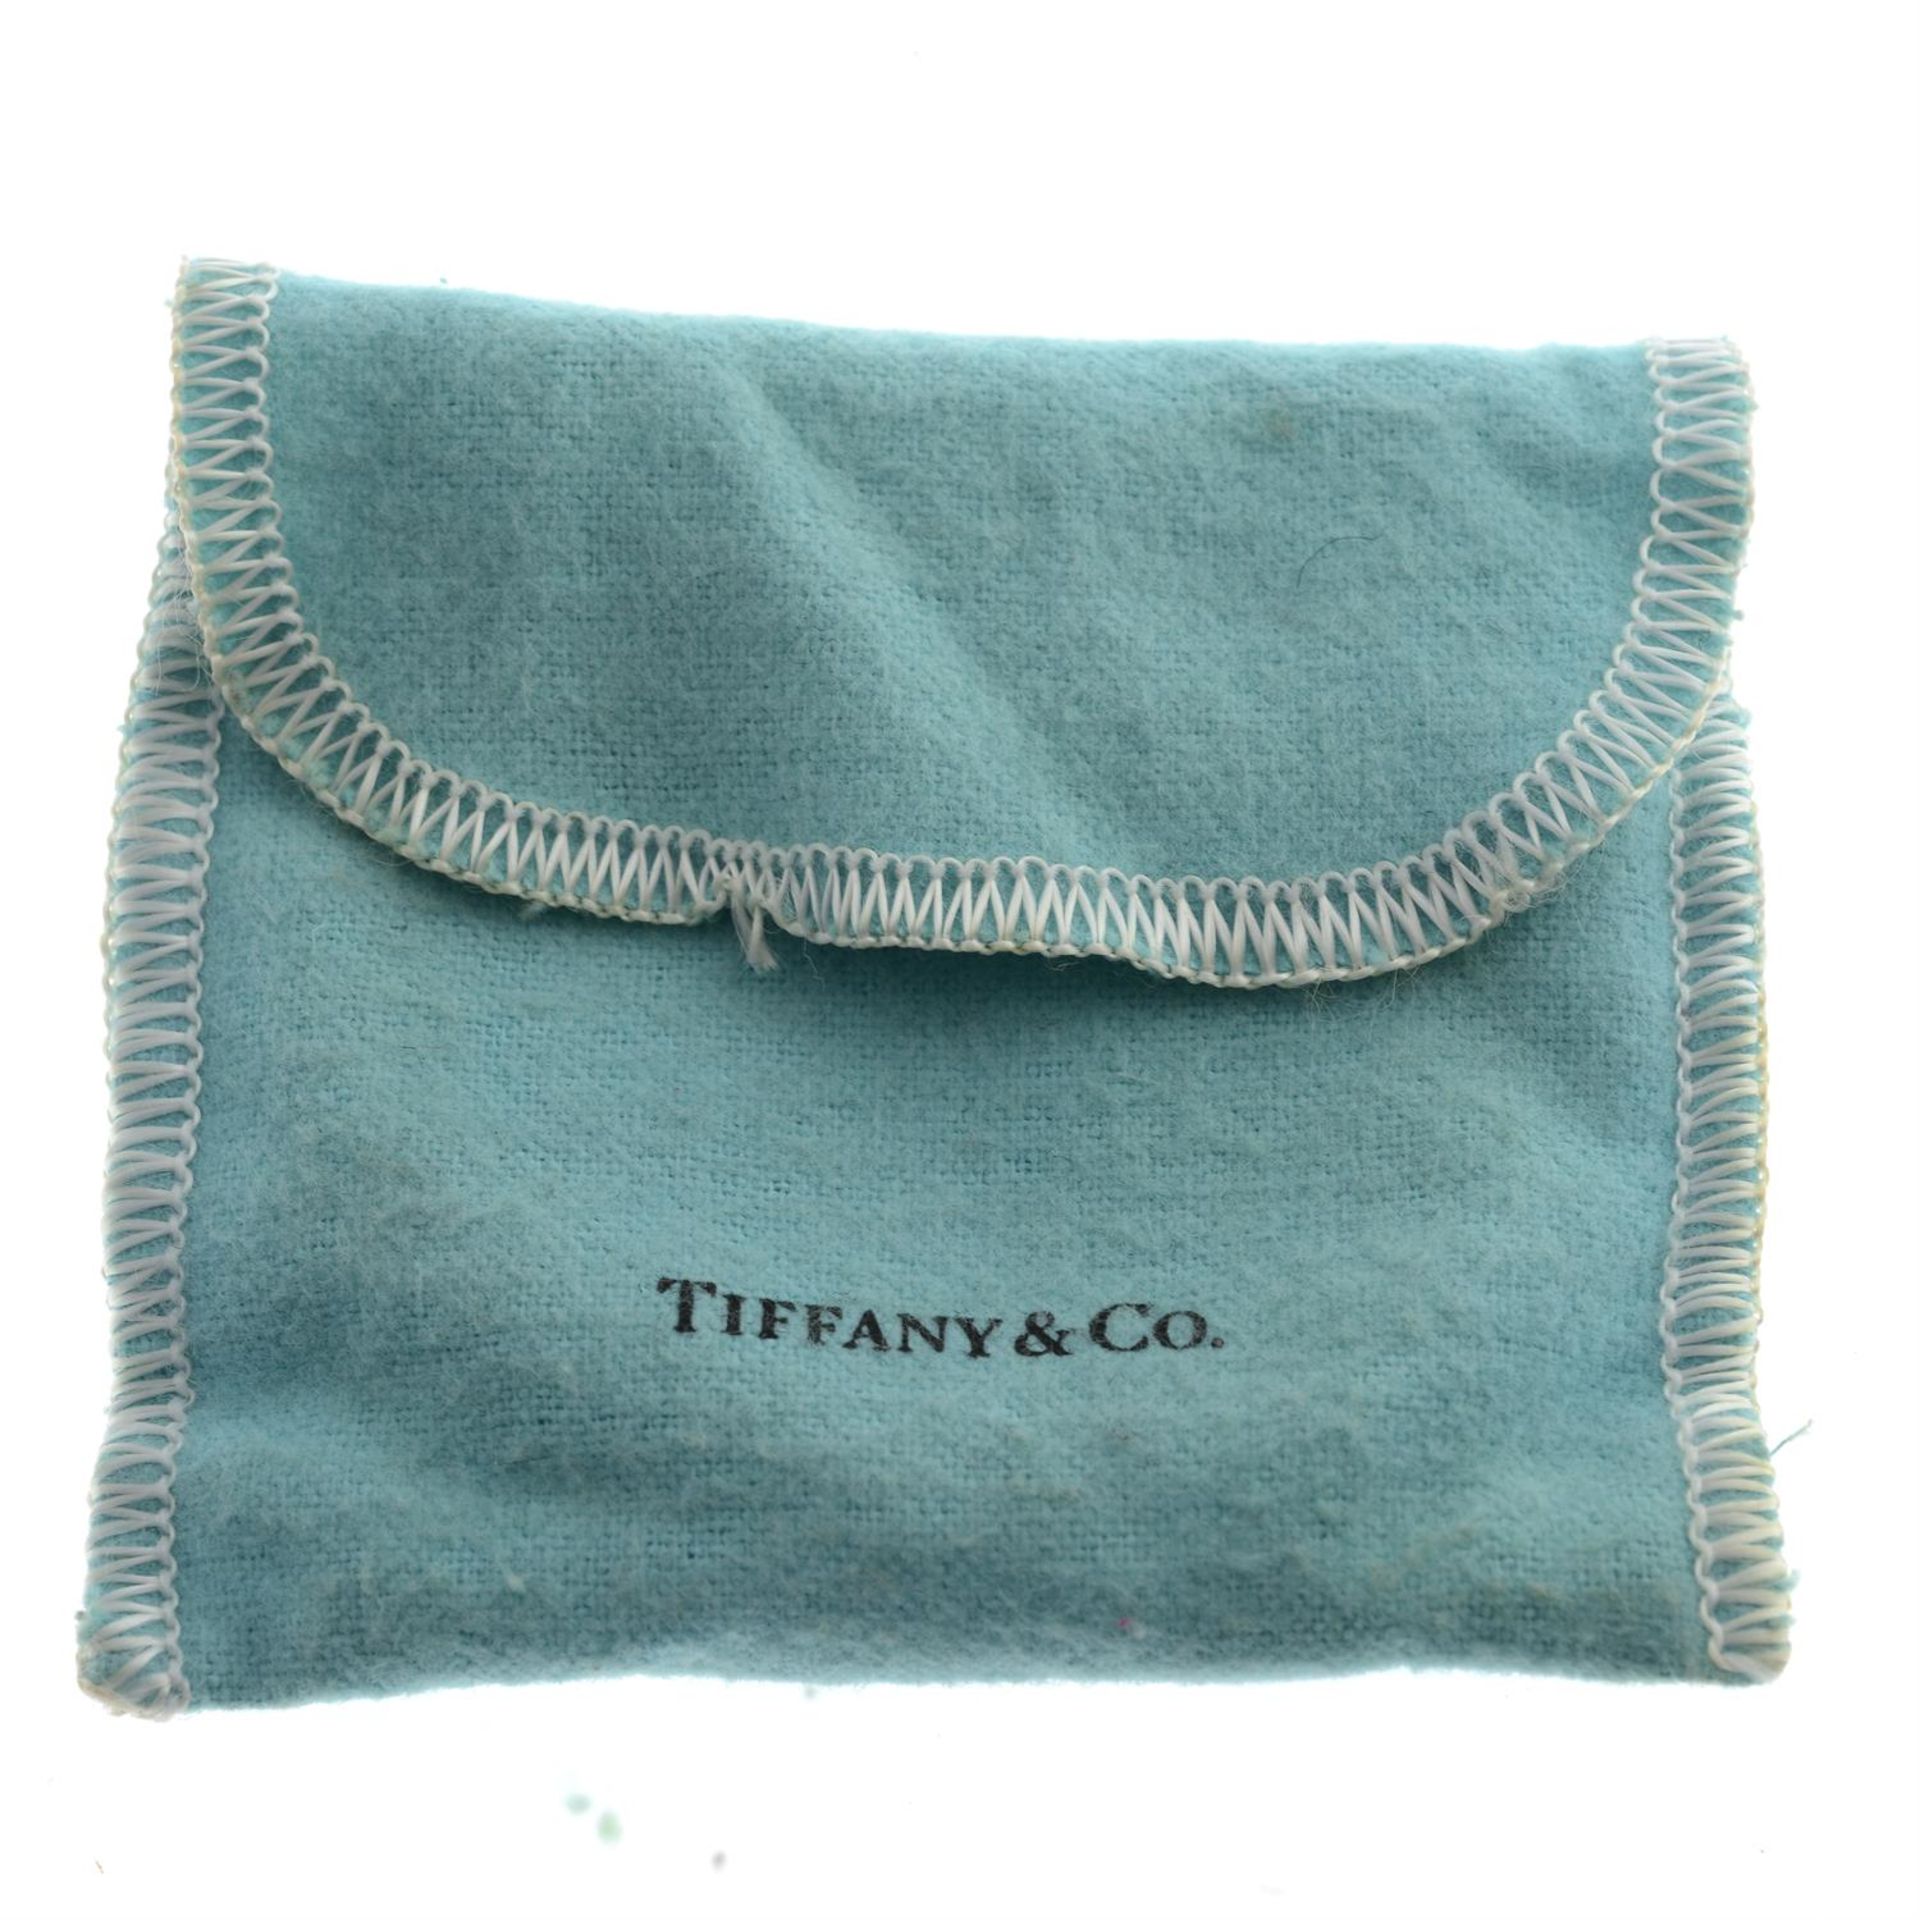 Bracelet, Tiffany & Co. - Image 3 of 3